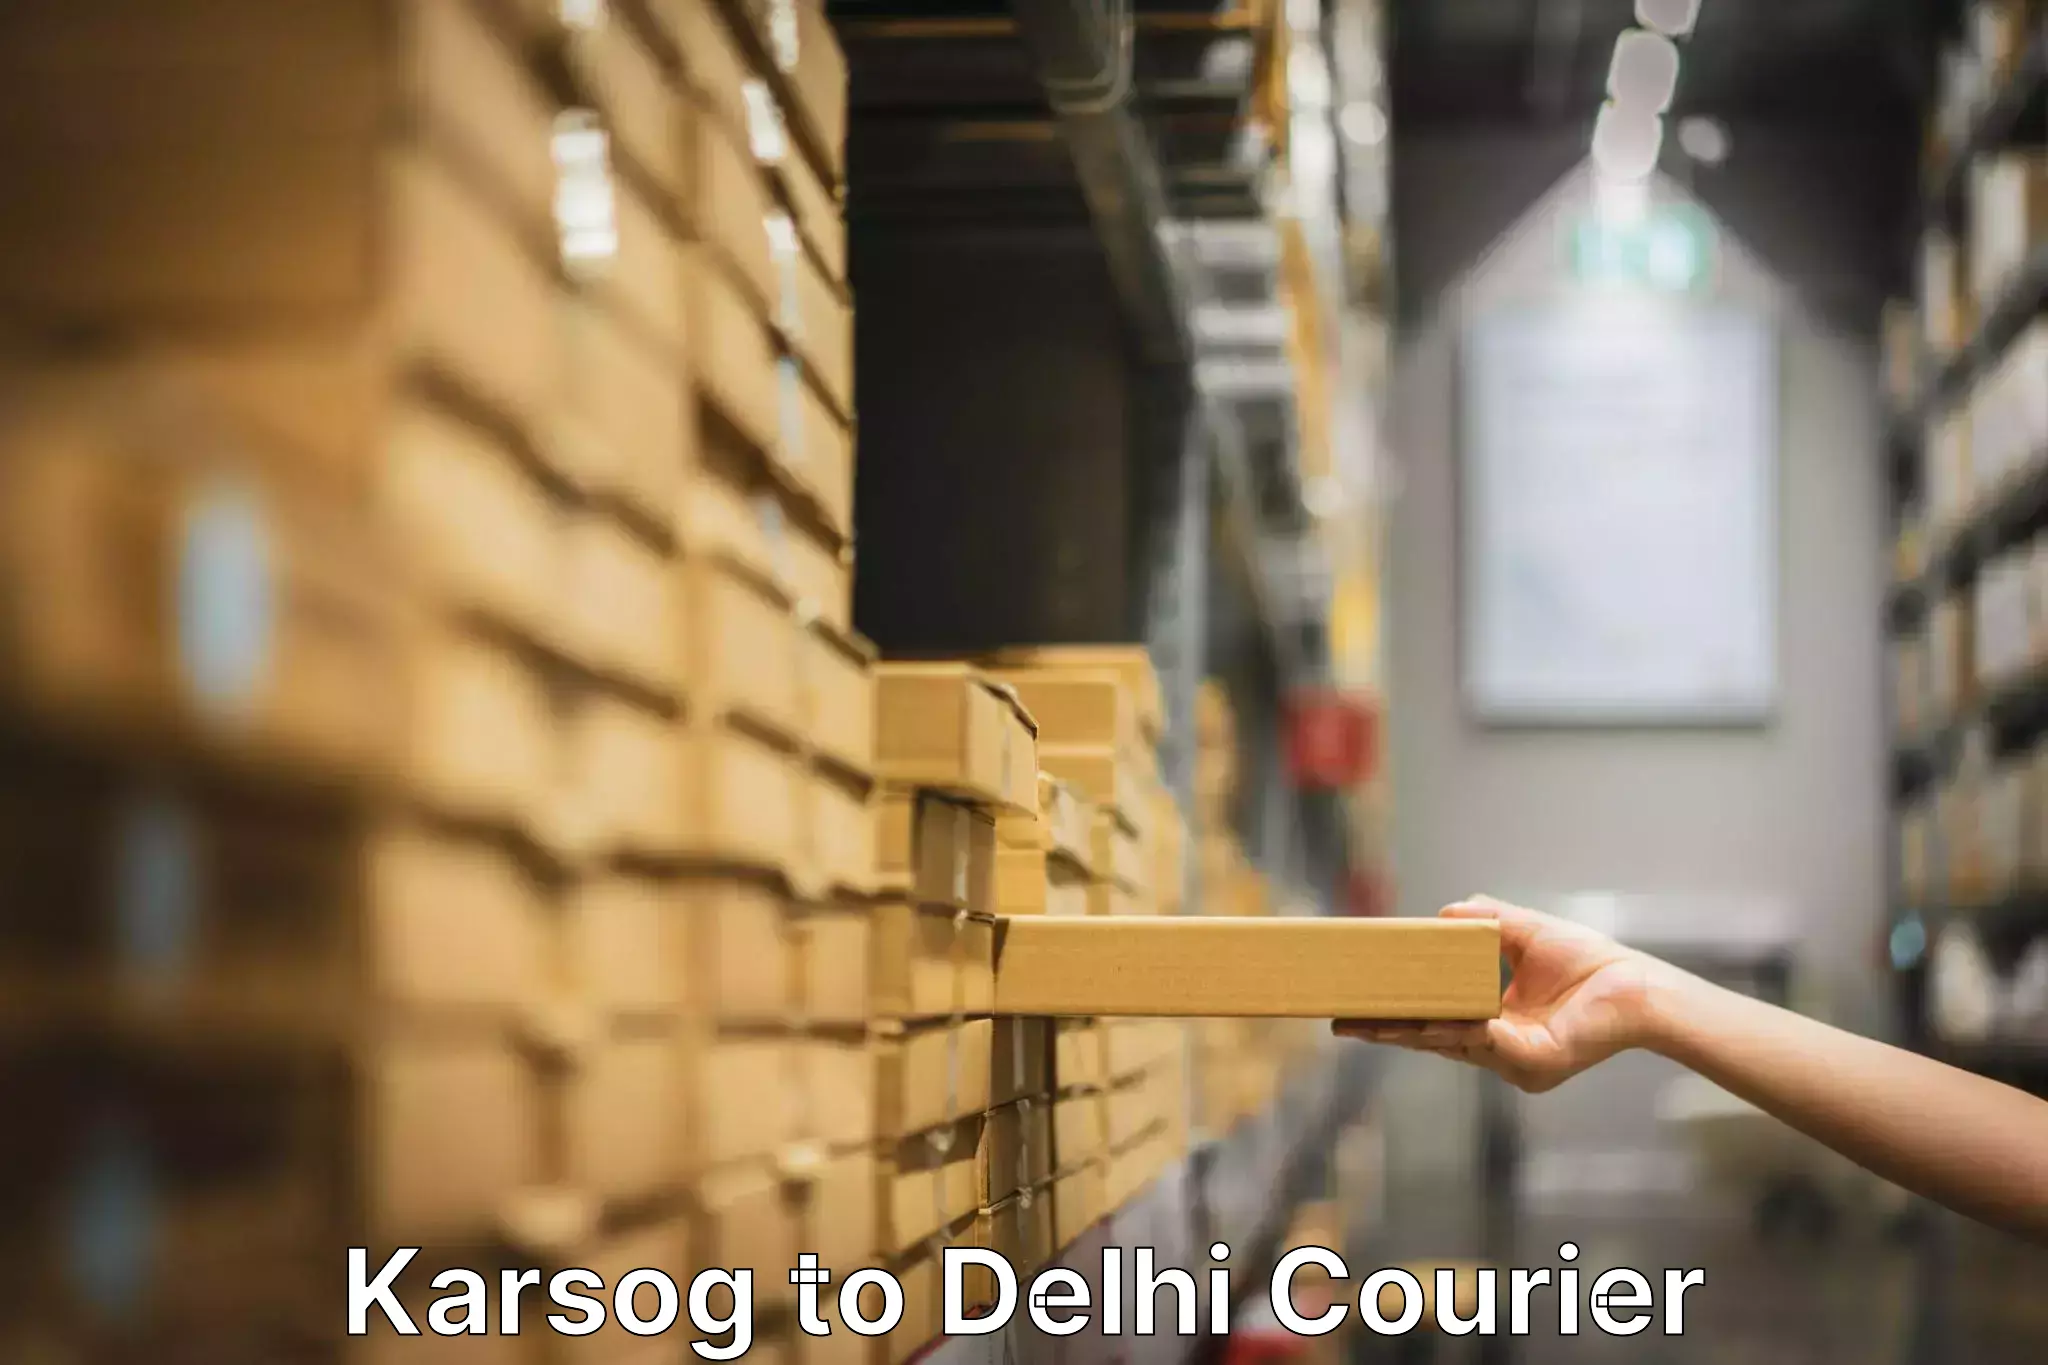 Household moving experts Karsog to East Delhi